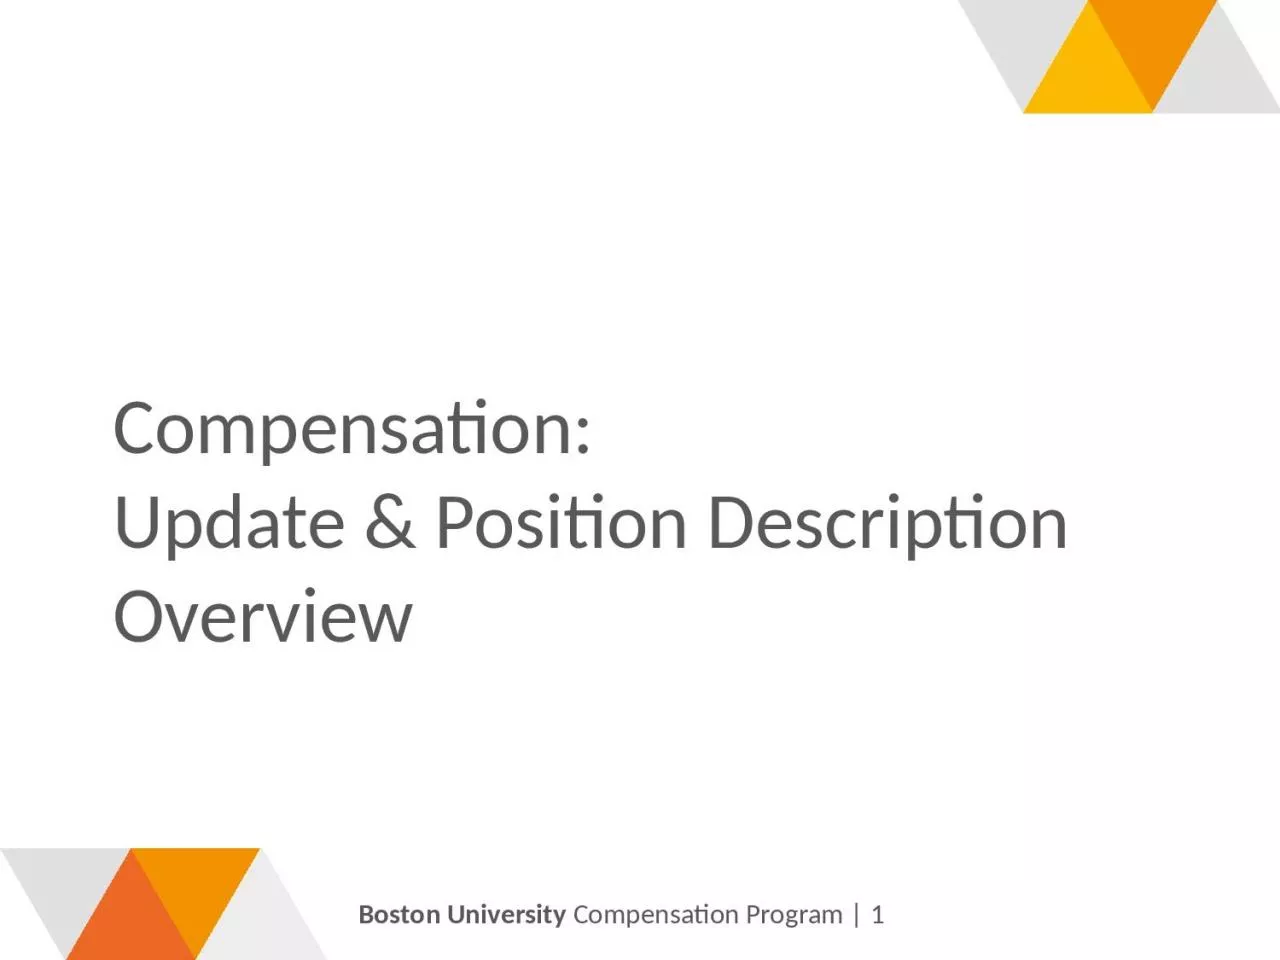 Compensation: Update & Position Description Overview